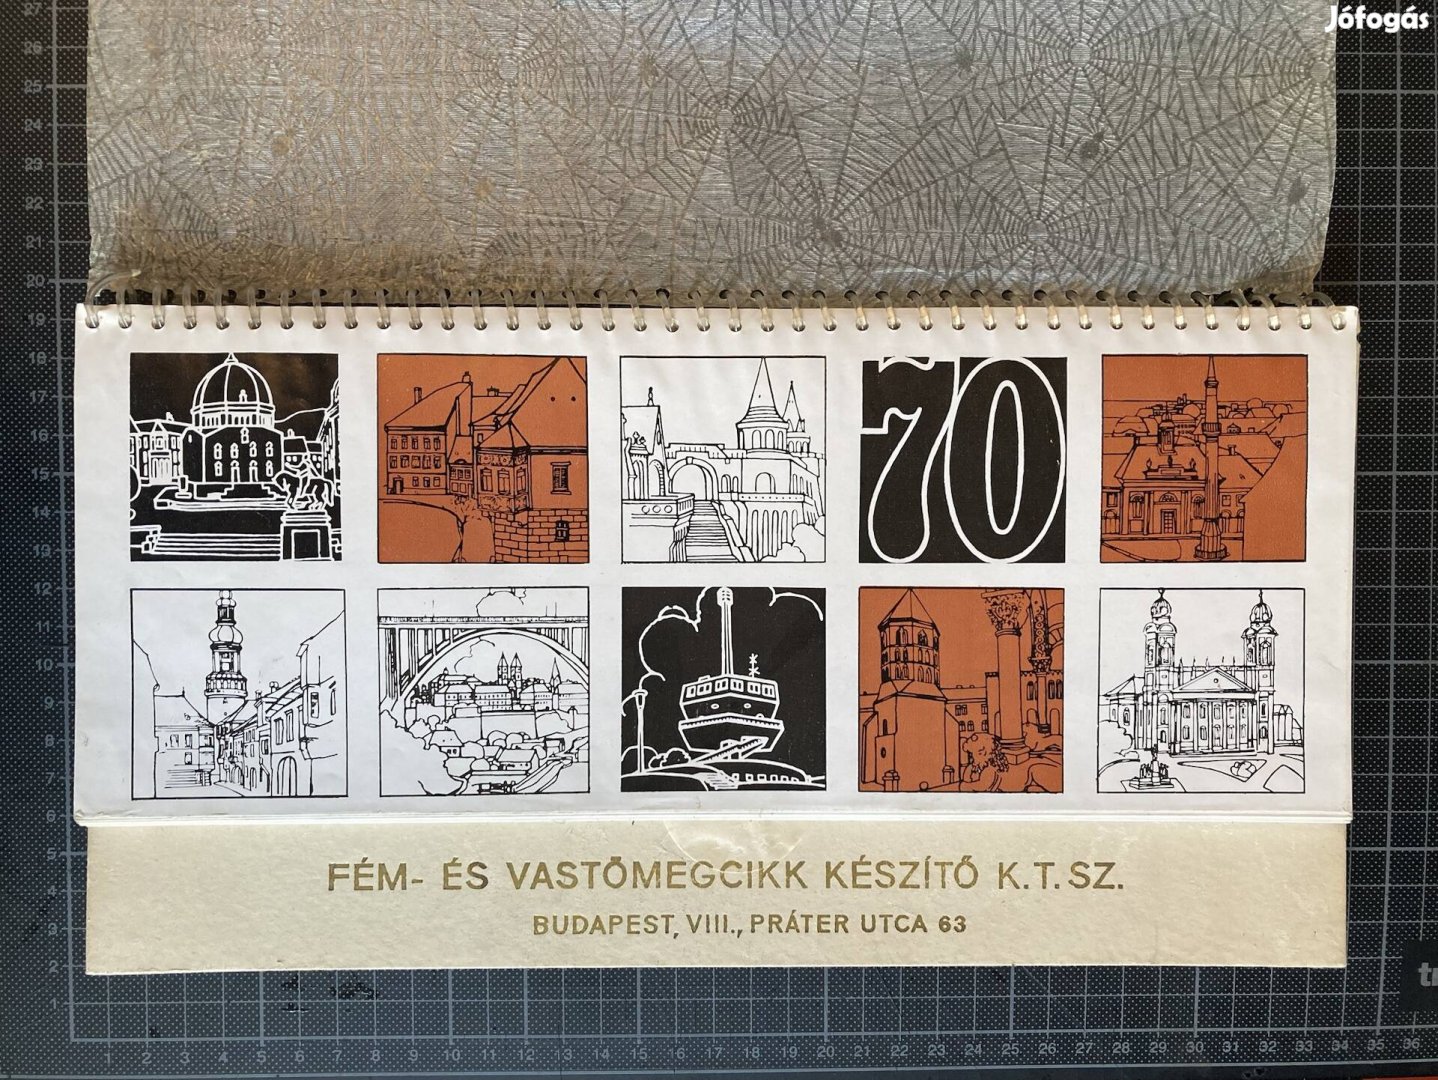 Retró! Fém- és Vastömegcikk készítő KTSz 1970-es asztali naptára